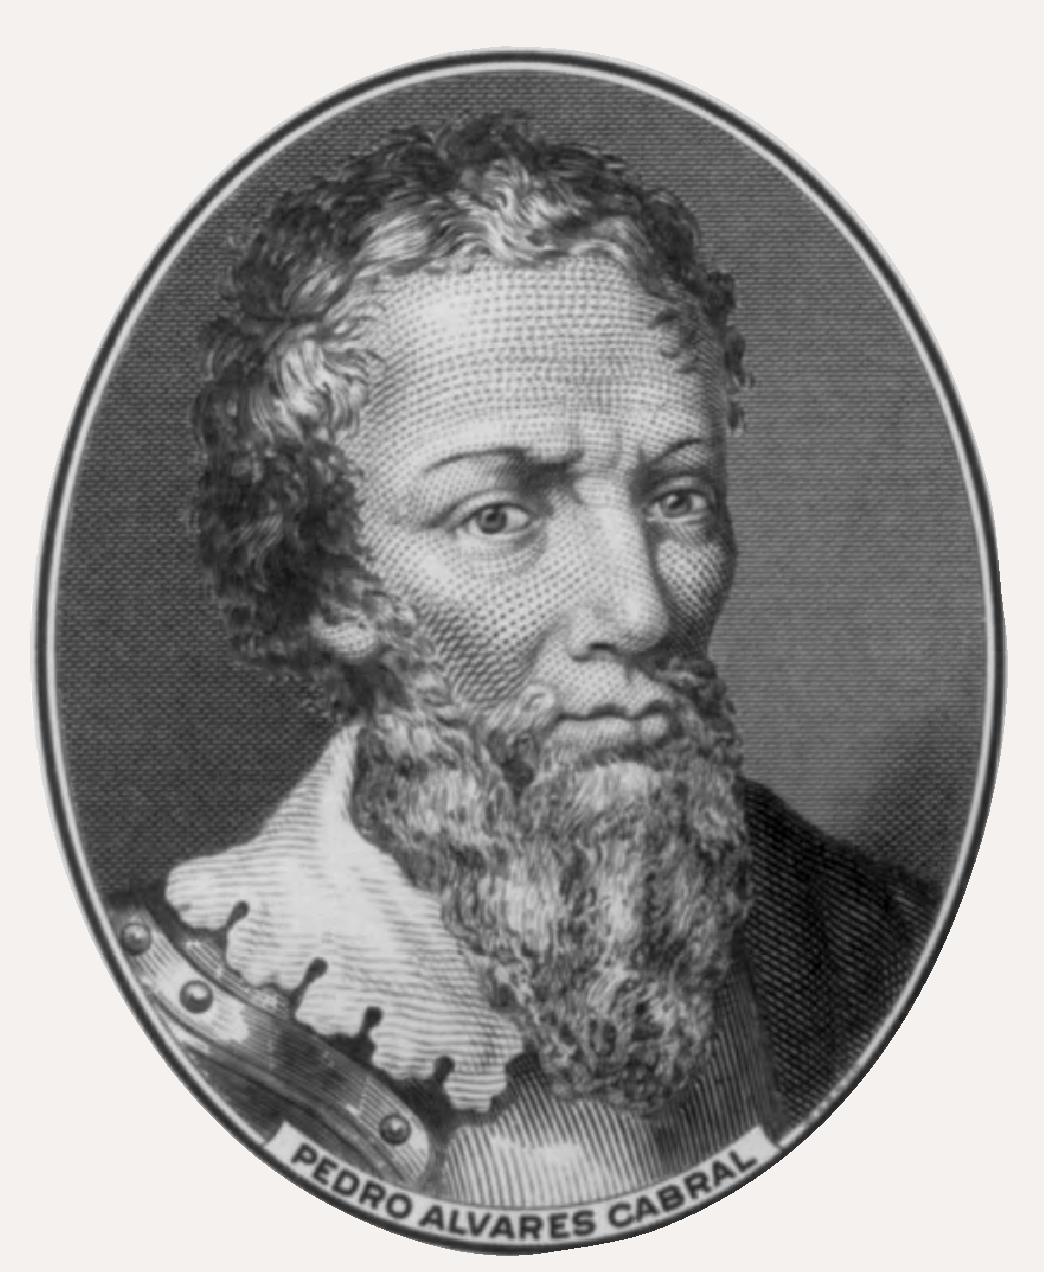 葡萄牙航海家佩德罗·阿尔瓦雷斯·卡布拉尔被认为是最早到达巴西的欧洲人